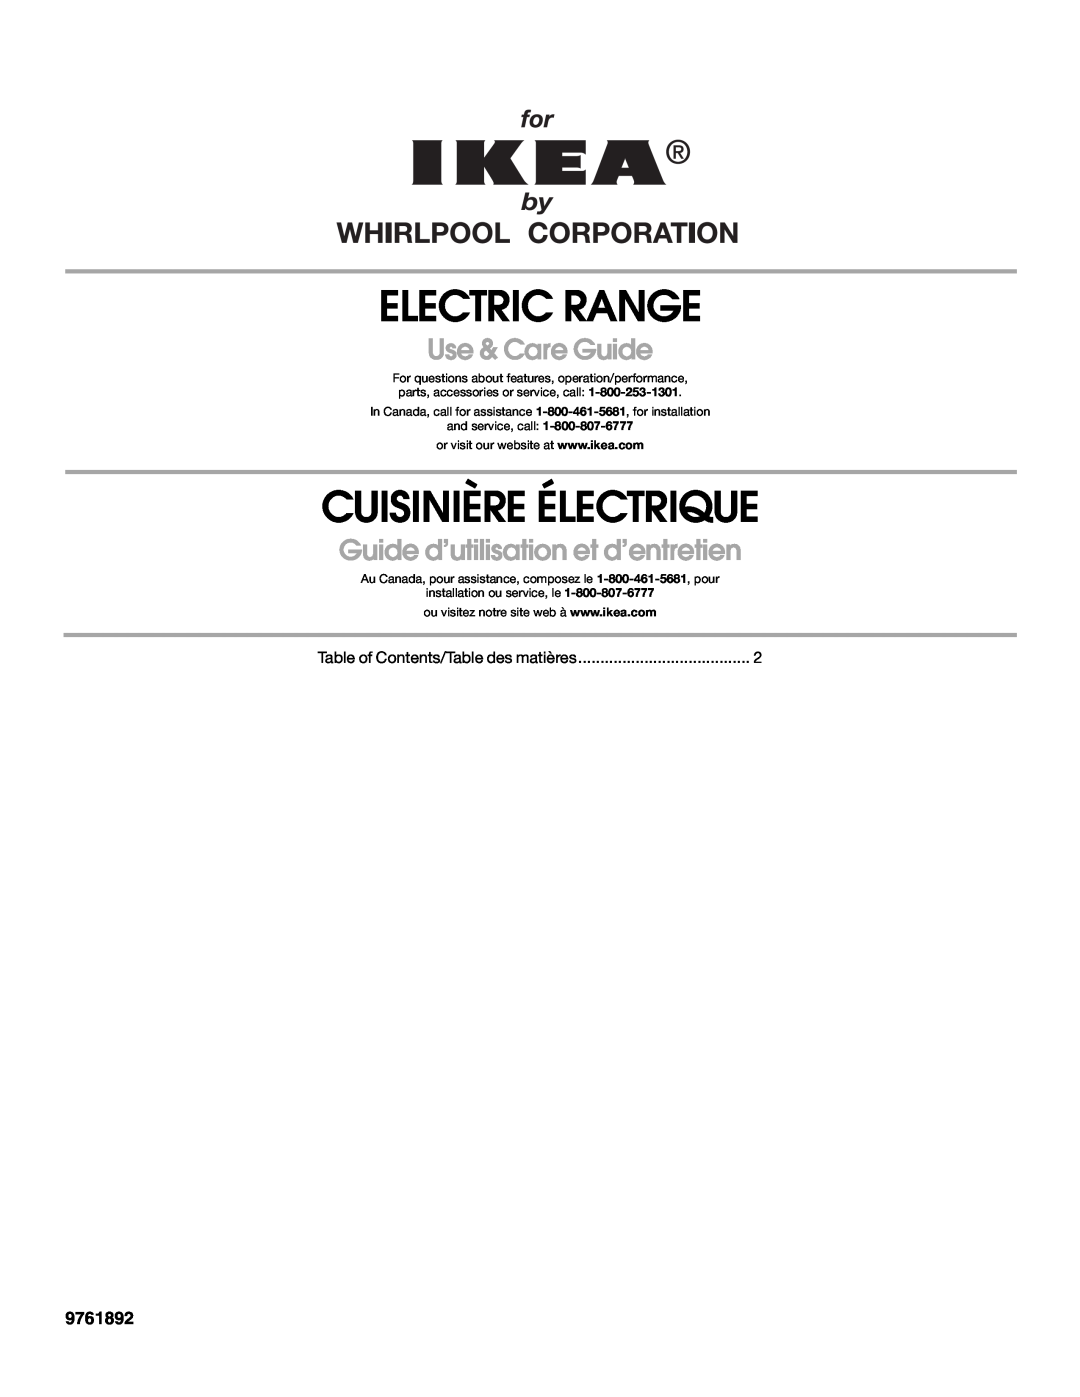 Whirlpool YIES366RS0 manual 9761892, Electric Range, Cuisinière Électrique, Use & Care Guide 